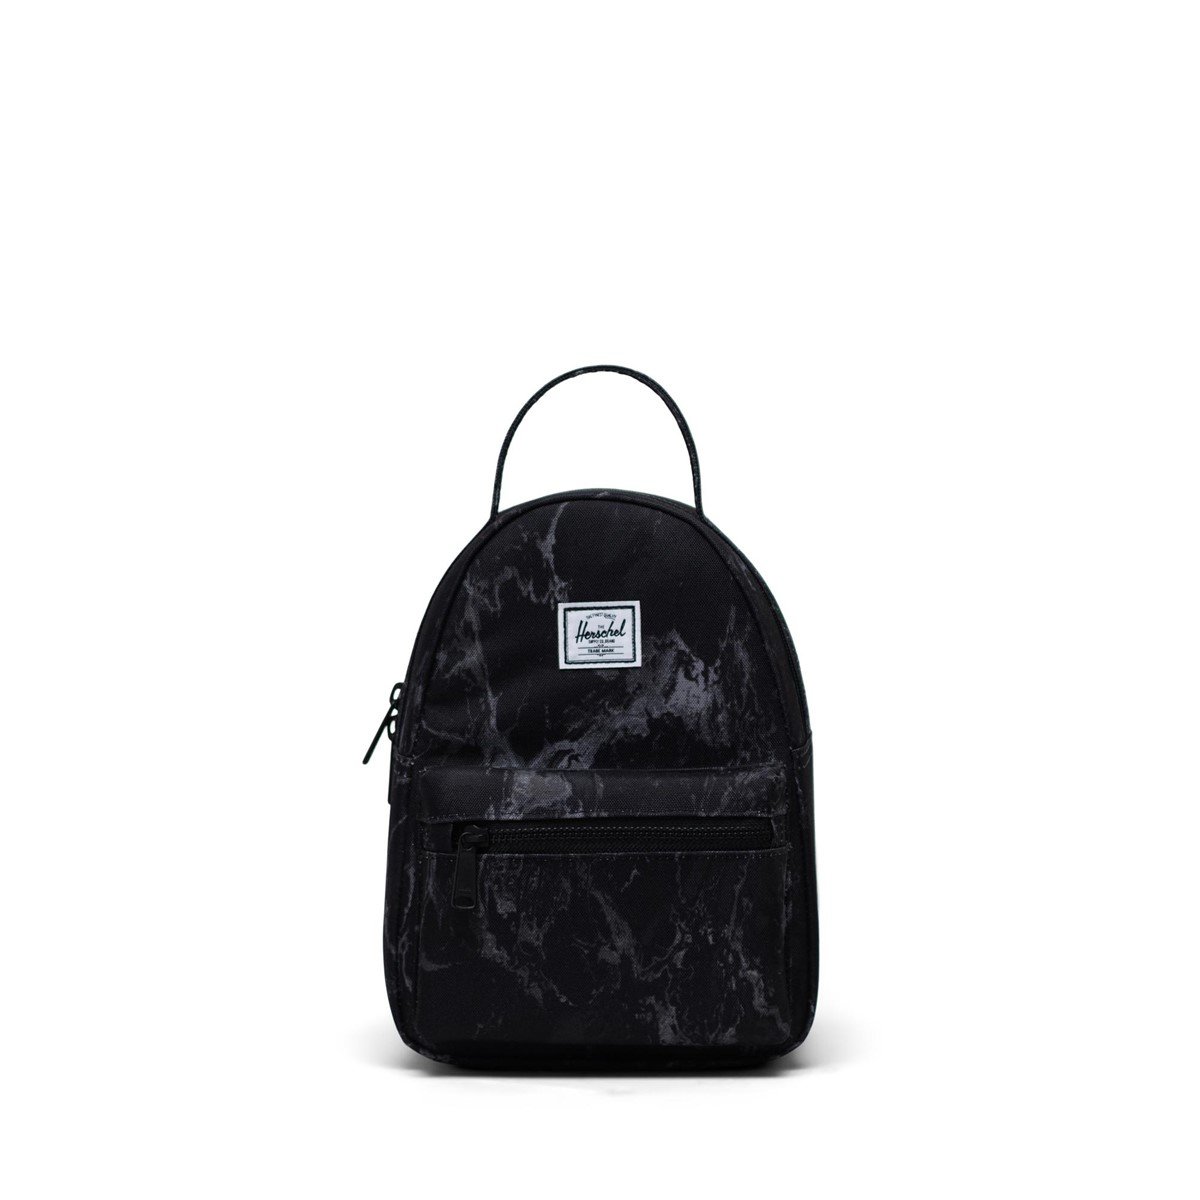 Nova Mini Backpack in Black Marble